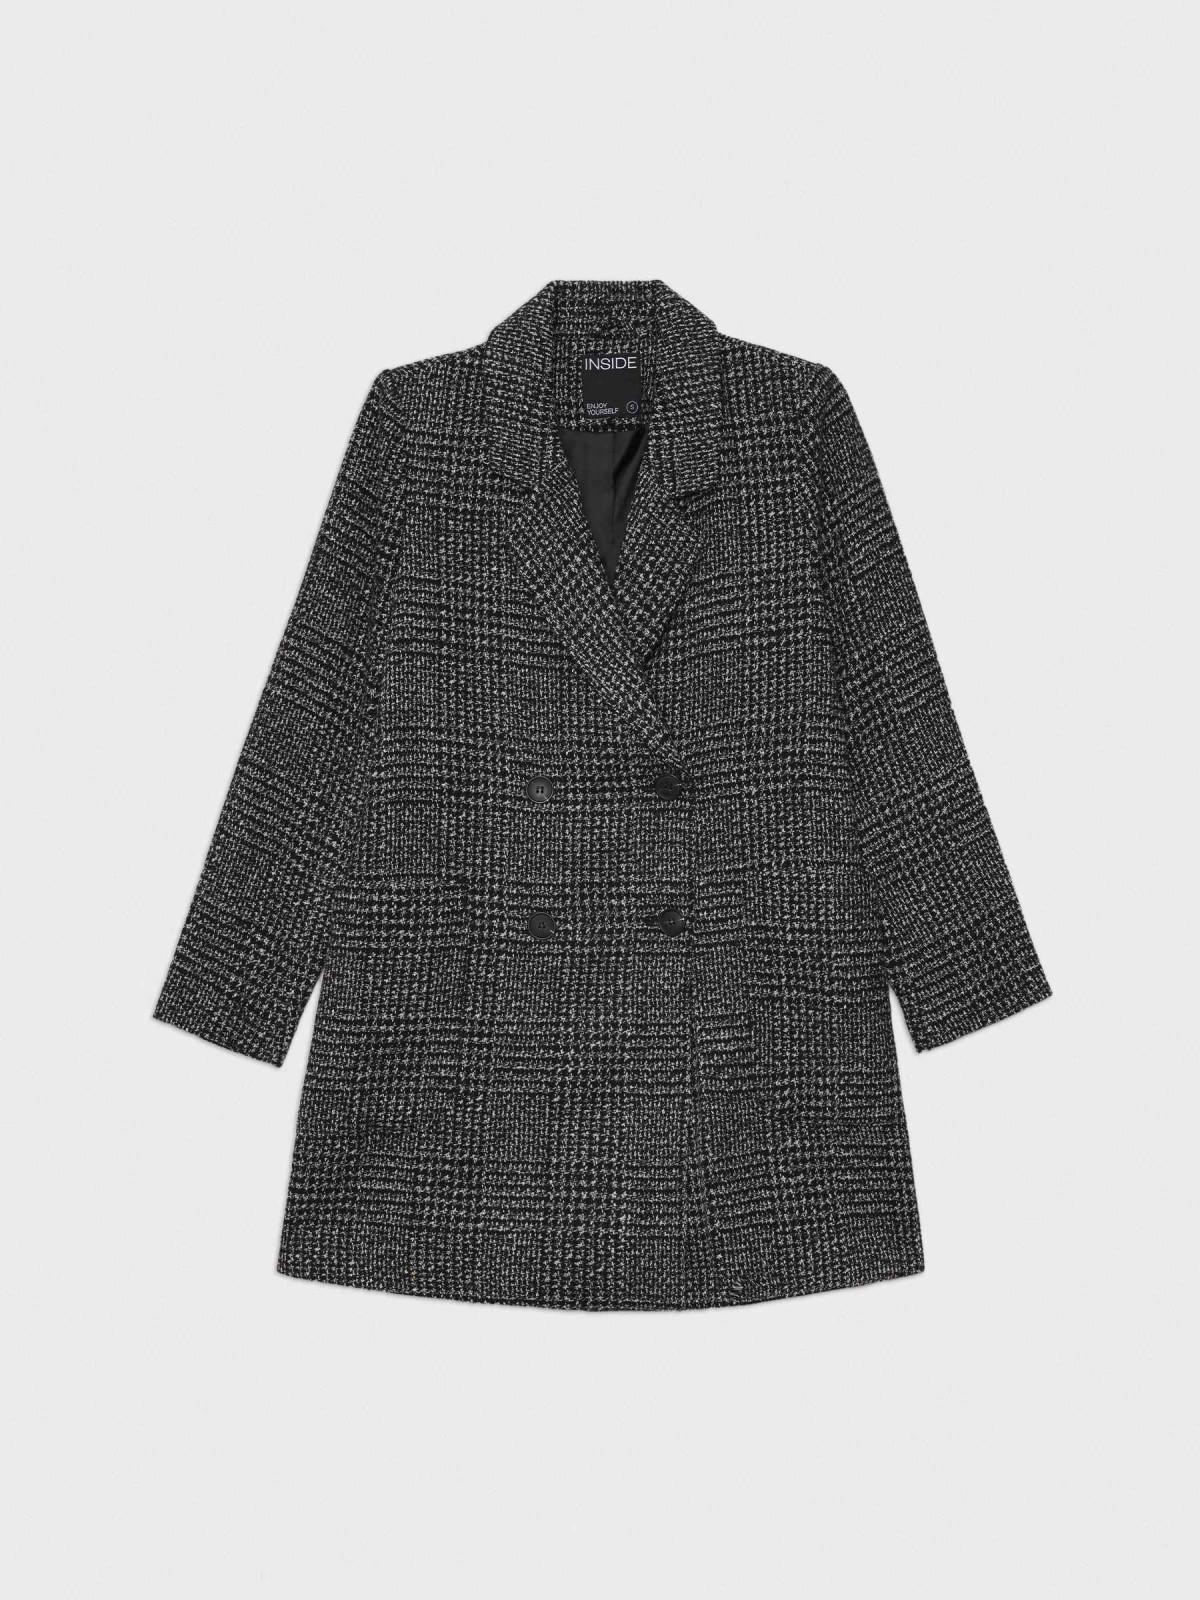  Crossed cloth coat black